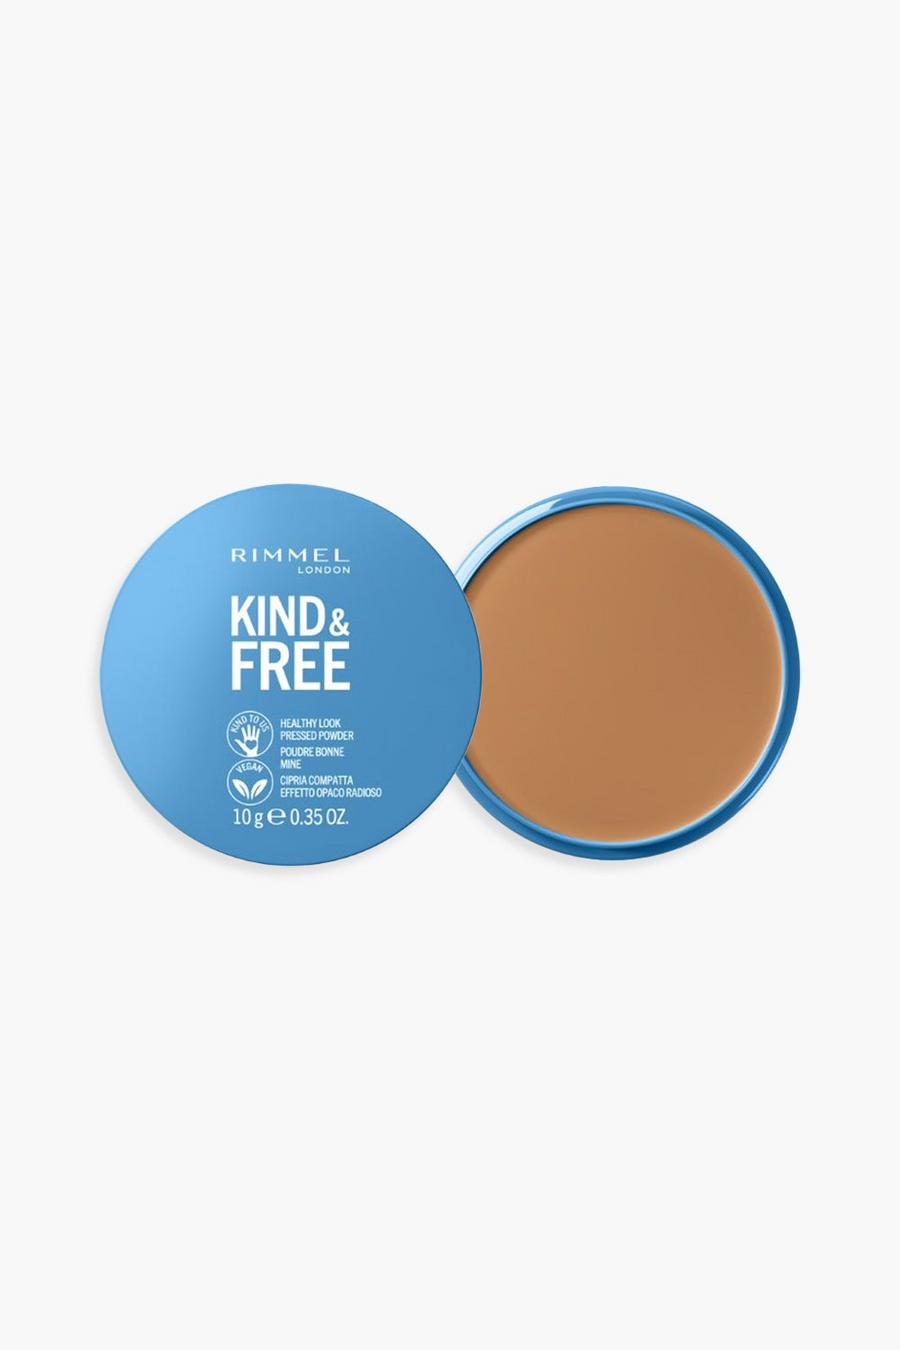 Rimmel Kind & Free - Poudre bronzante, Tan brown